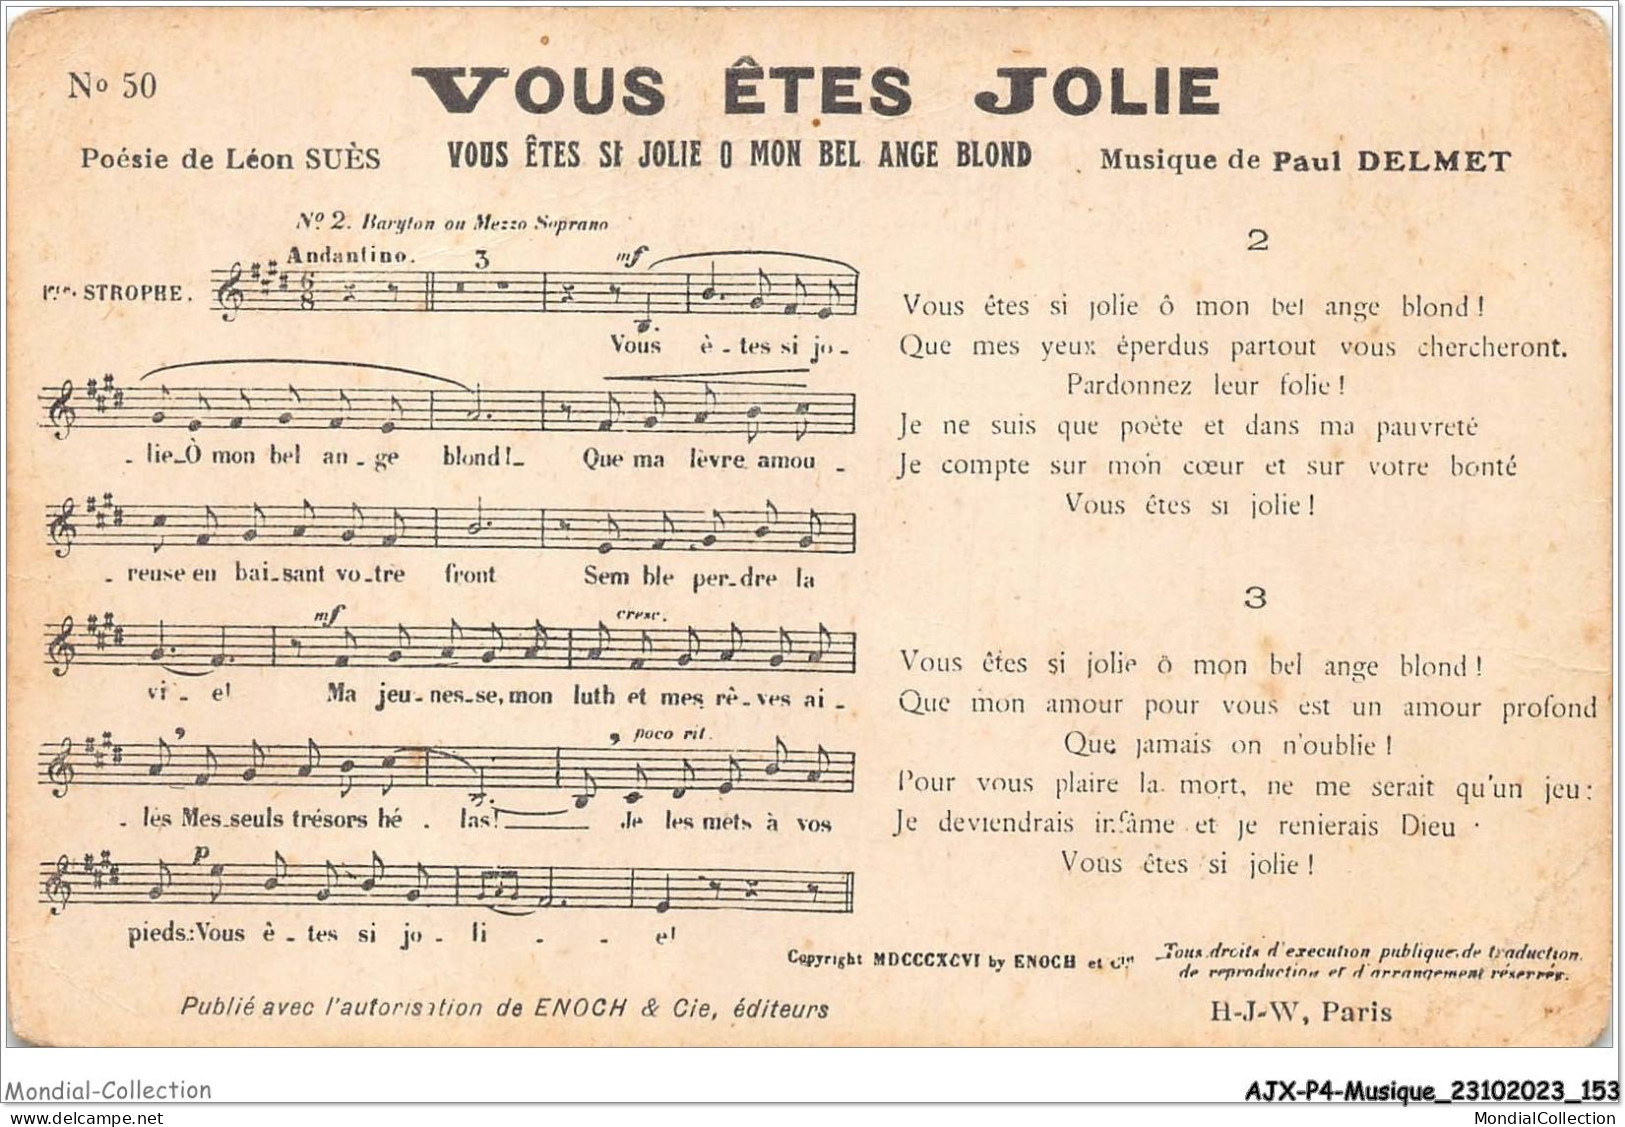 AJXP4-0416 - MUSIQUE - VOUS ETES JOLIE - VOUS ETES ST JOLIE O MON BEL ANGE BLOND - Musique Et Musiciens